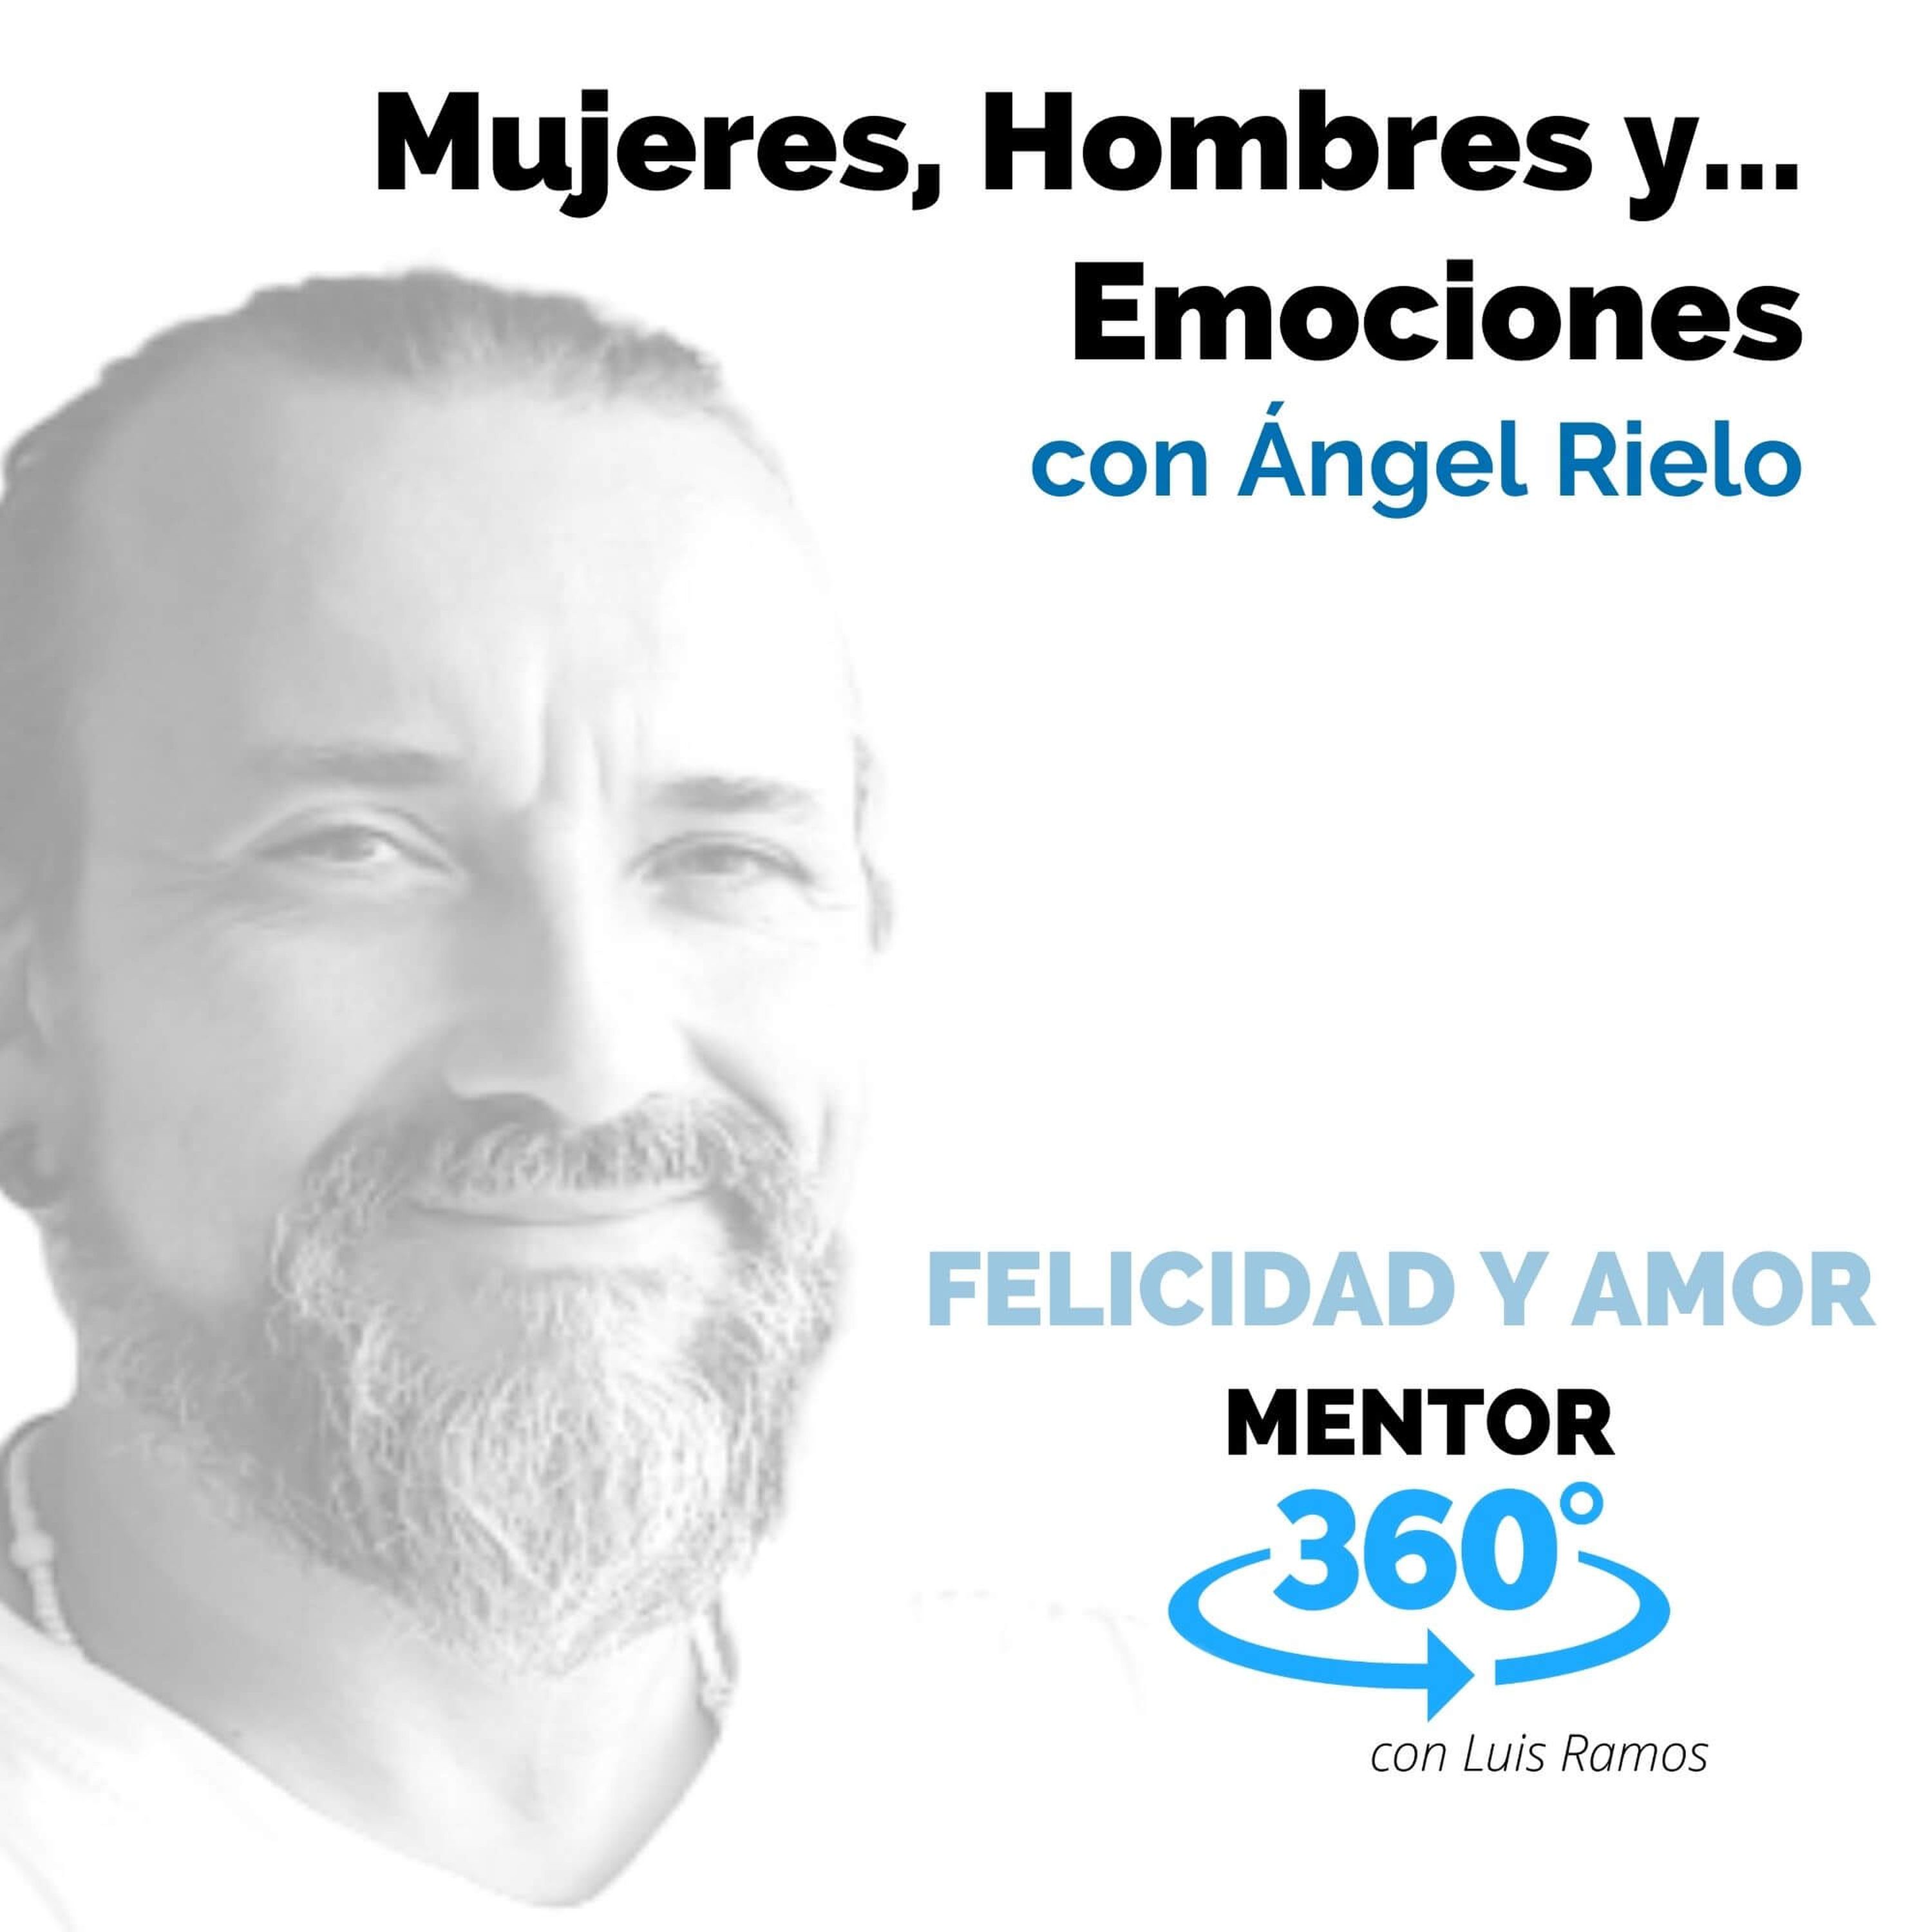 Mujeres, Hombres y... Emociones, con Ángel Rielo - MENTOR360